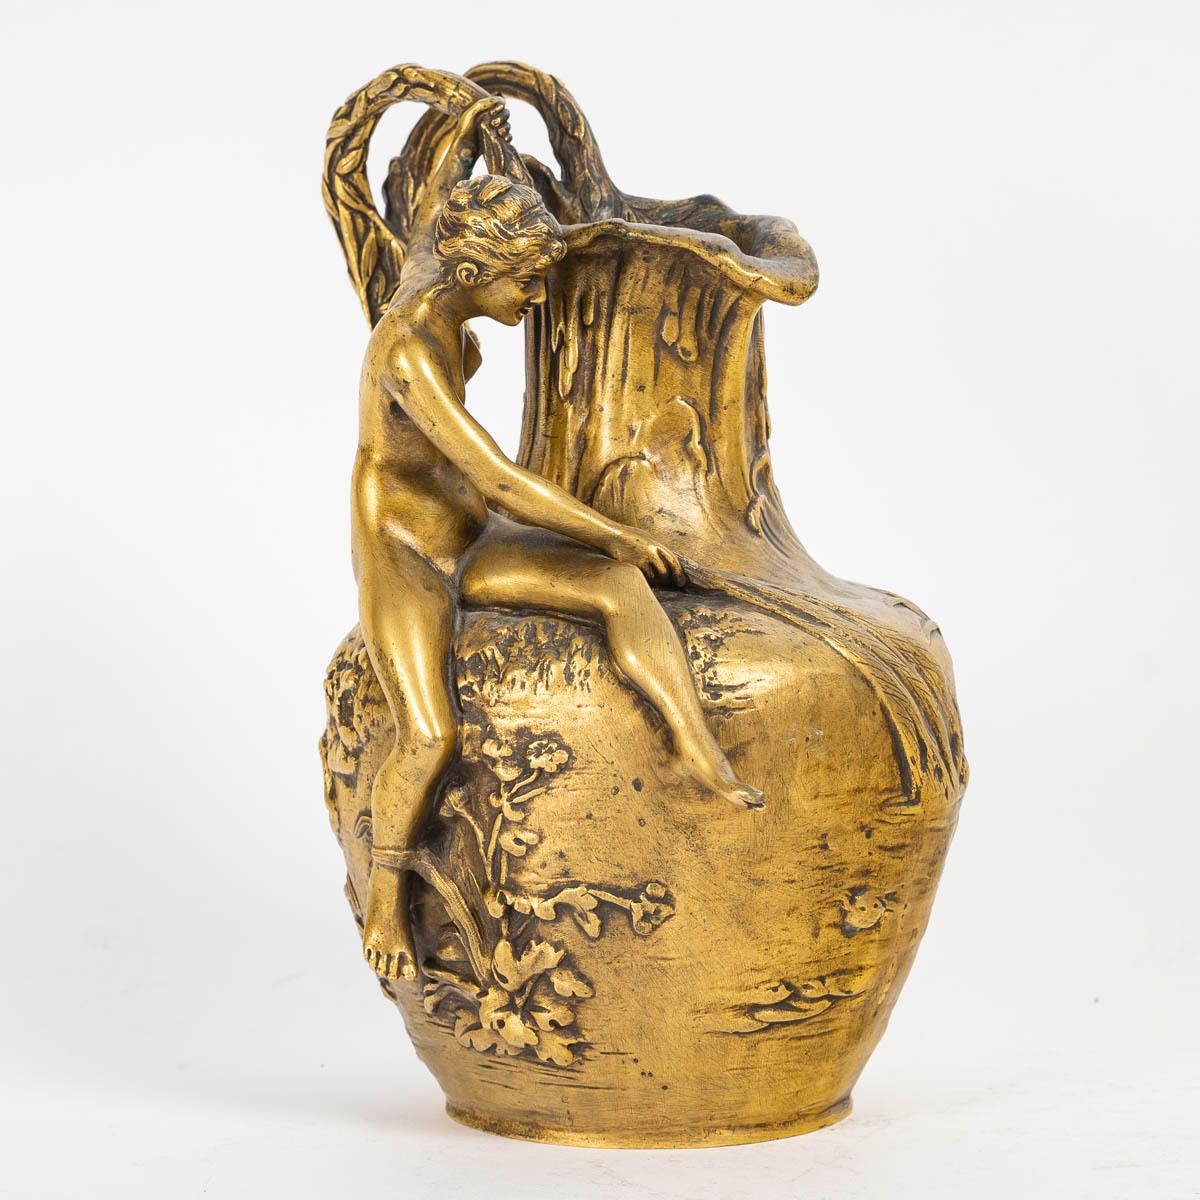 Vase Art nouveau, cruche, signé A, Vibert, vers 1900 .

Vase en bronze doré, cruche, style Art Nouveau, 1900, signé A, Vibert.
h : 21cm, w : 17cm, d : 13cm